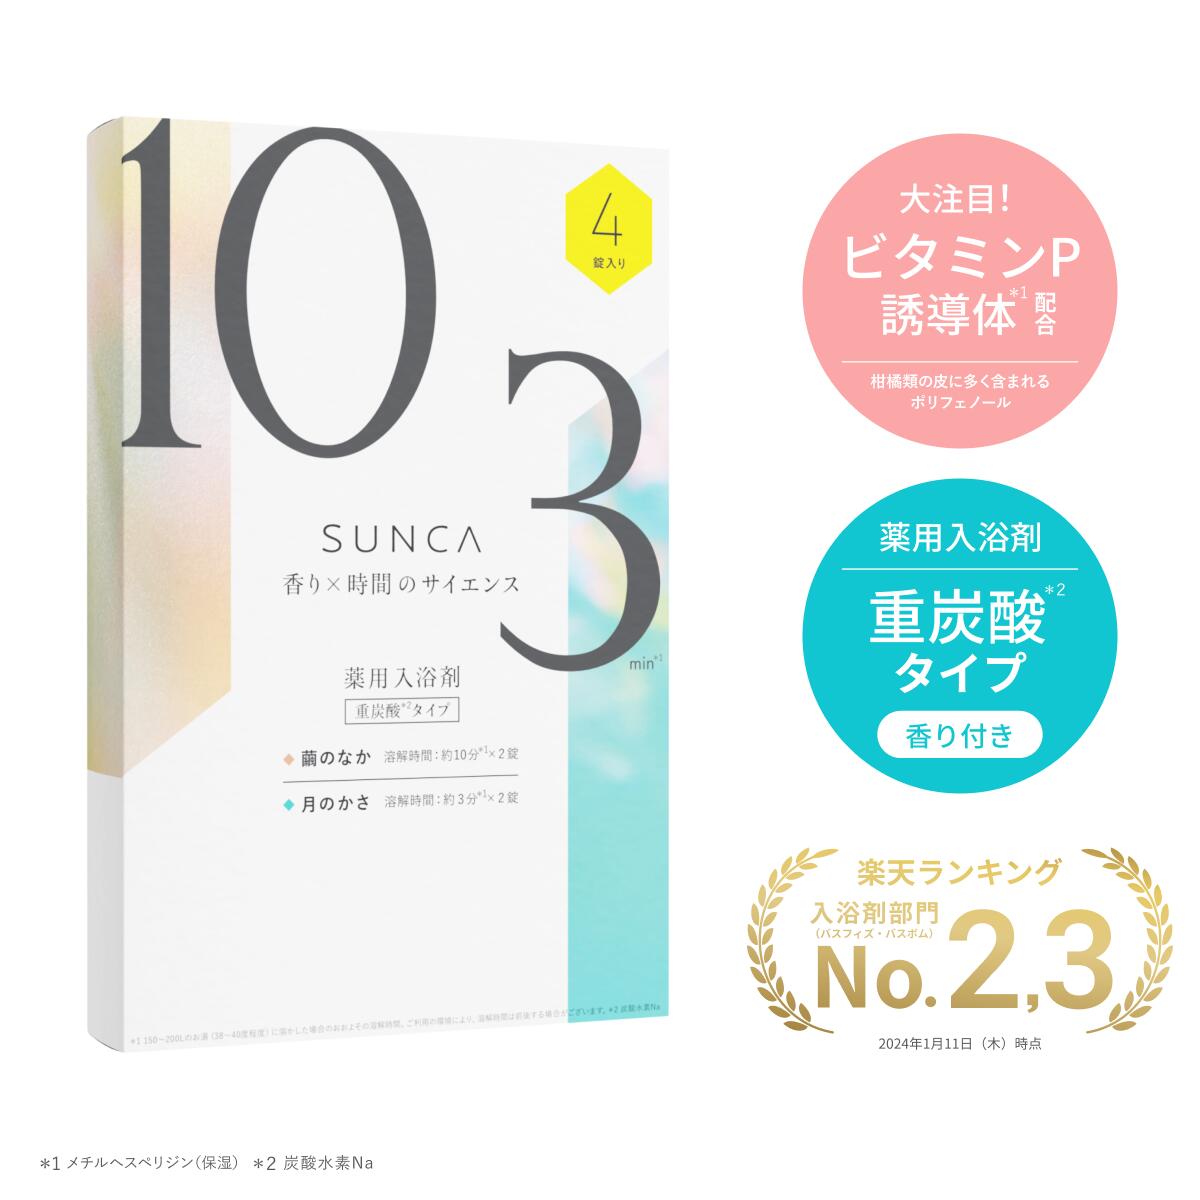 【公式】SUNCA 重炭酸 薬用 入浴剤 12